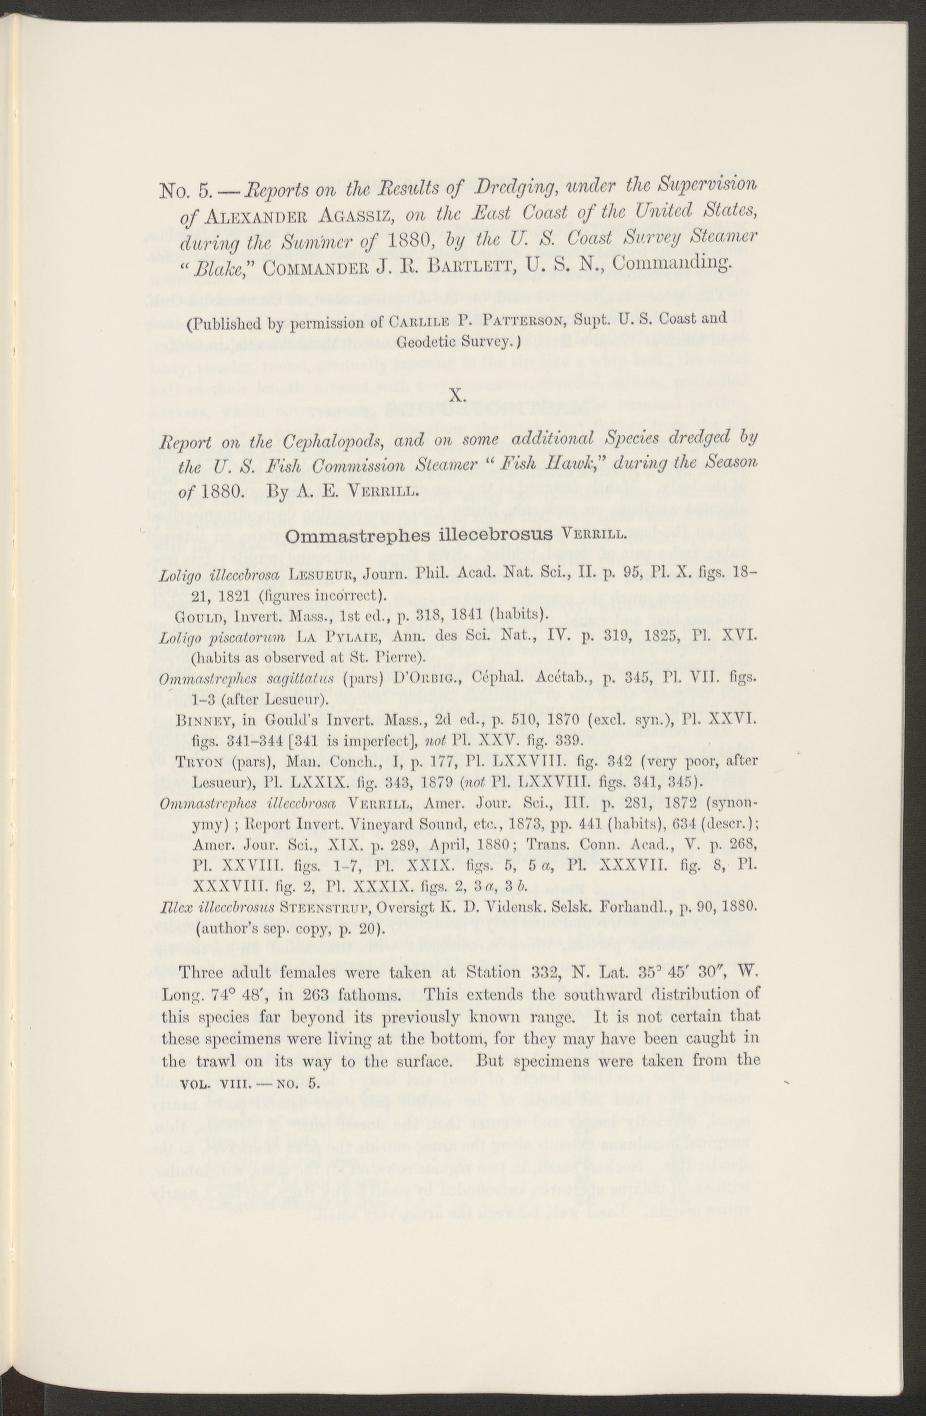 Media of type text, Verrill 1881. Description:MCZ Bulletin Vol. VIII no. 5